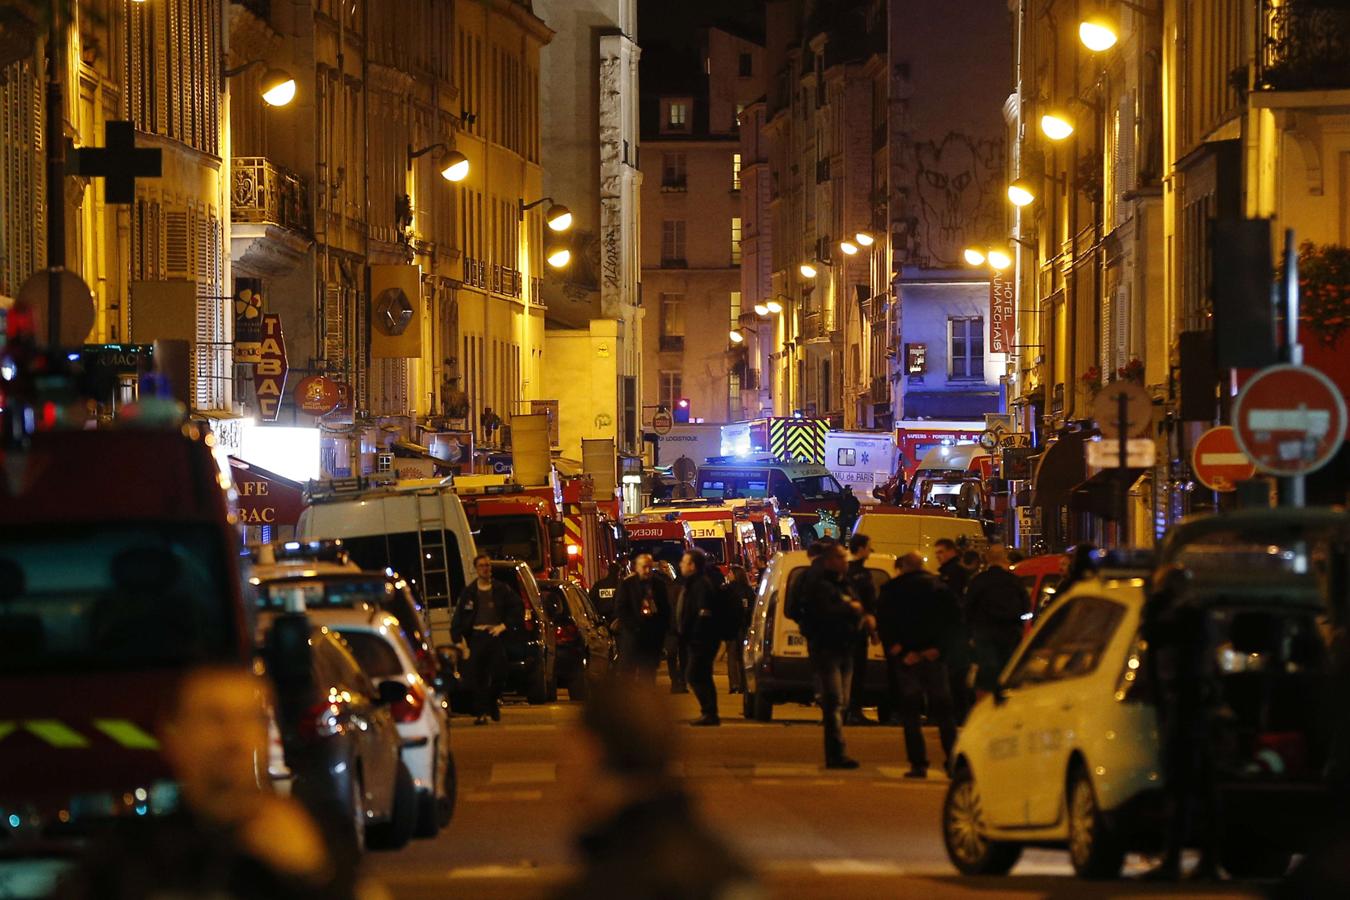 En noviembre de 2015 se sucedieron varios ataques terroristas yihadistas en París (Francia) en los que murieron 137 personas y más de 400 personas resultaron heridas. En la imagen, la sala Bataclan de la ciudad francesa, uno de los objetivos. 